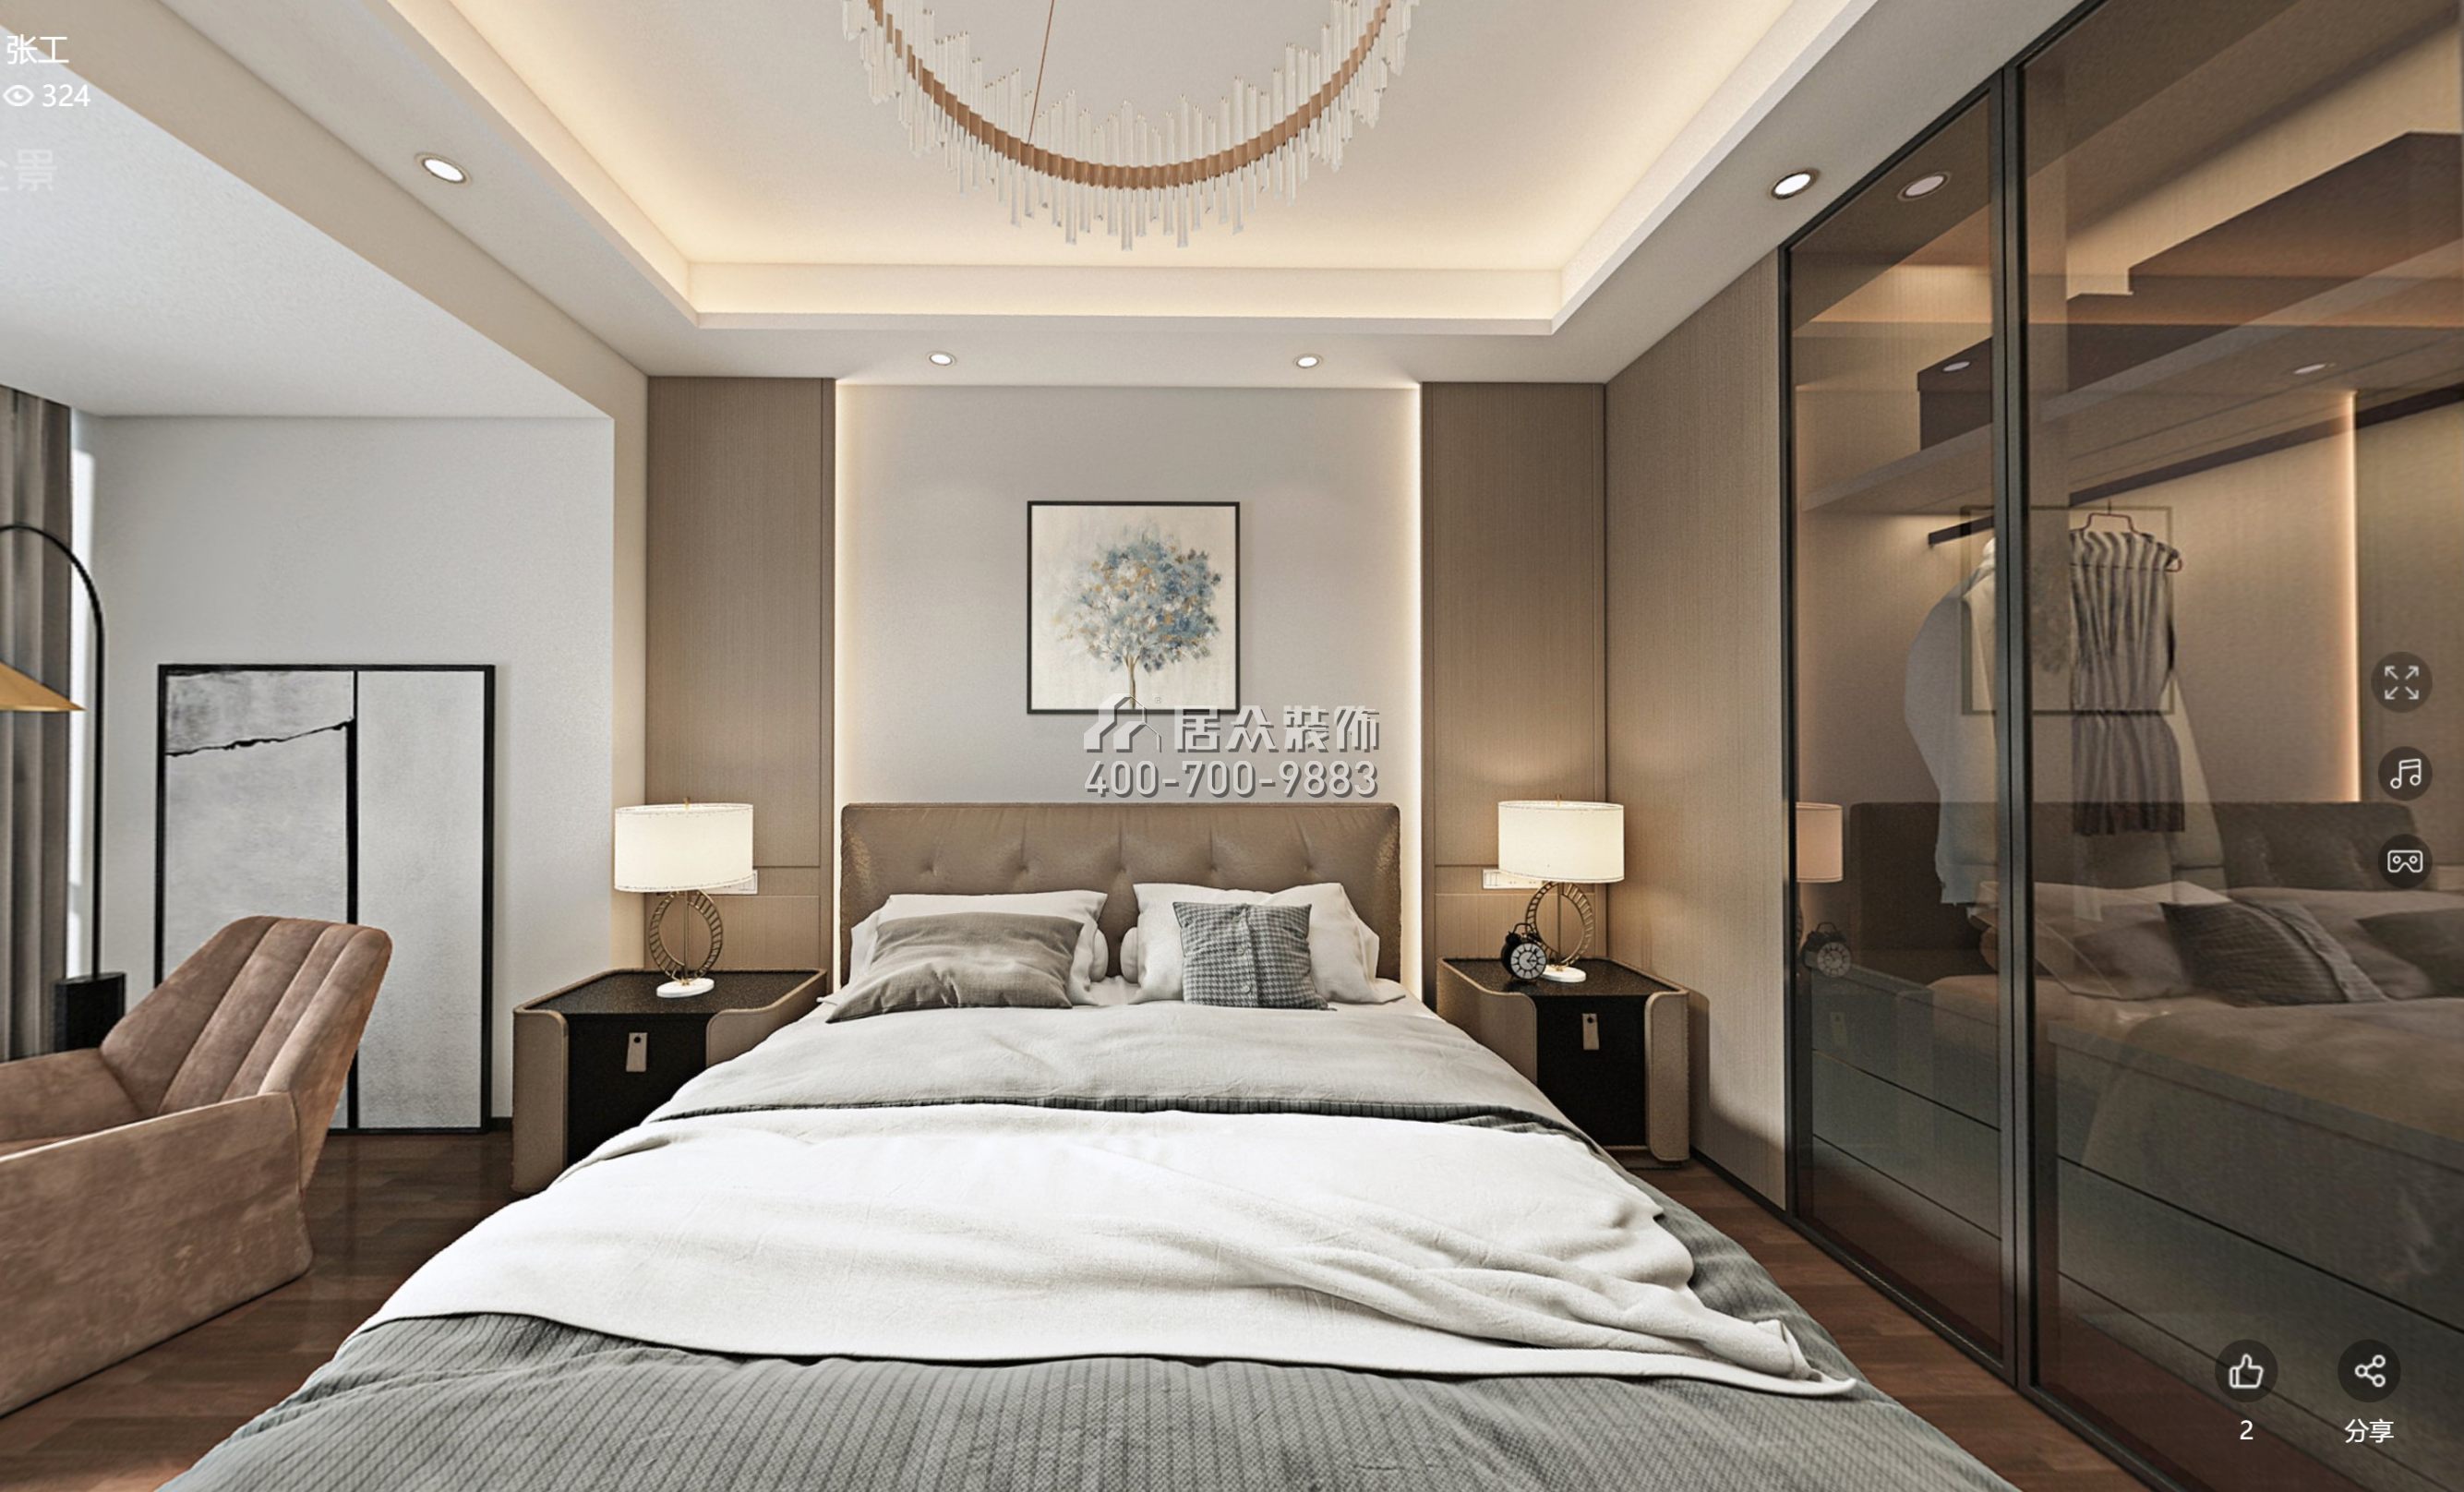 中洲中央公园160平方米现代简约风格平层户型卧室装修效果图